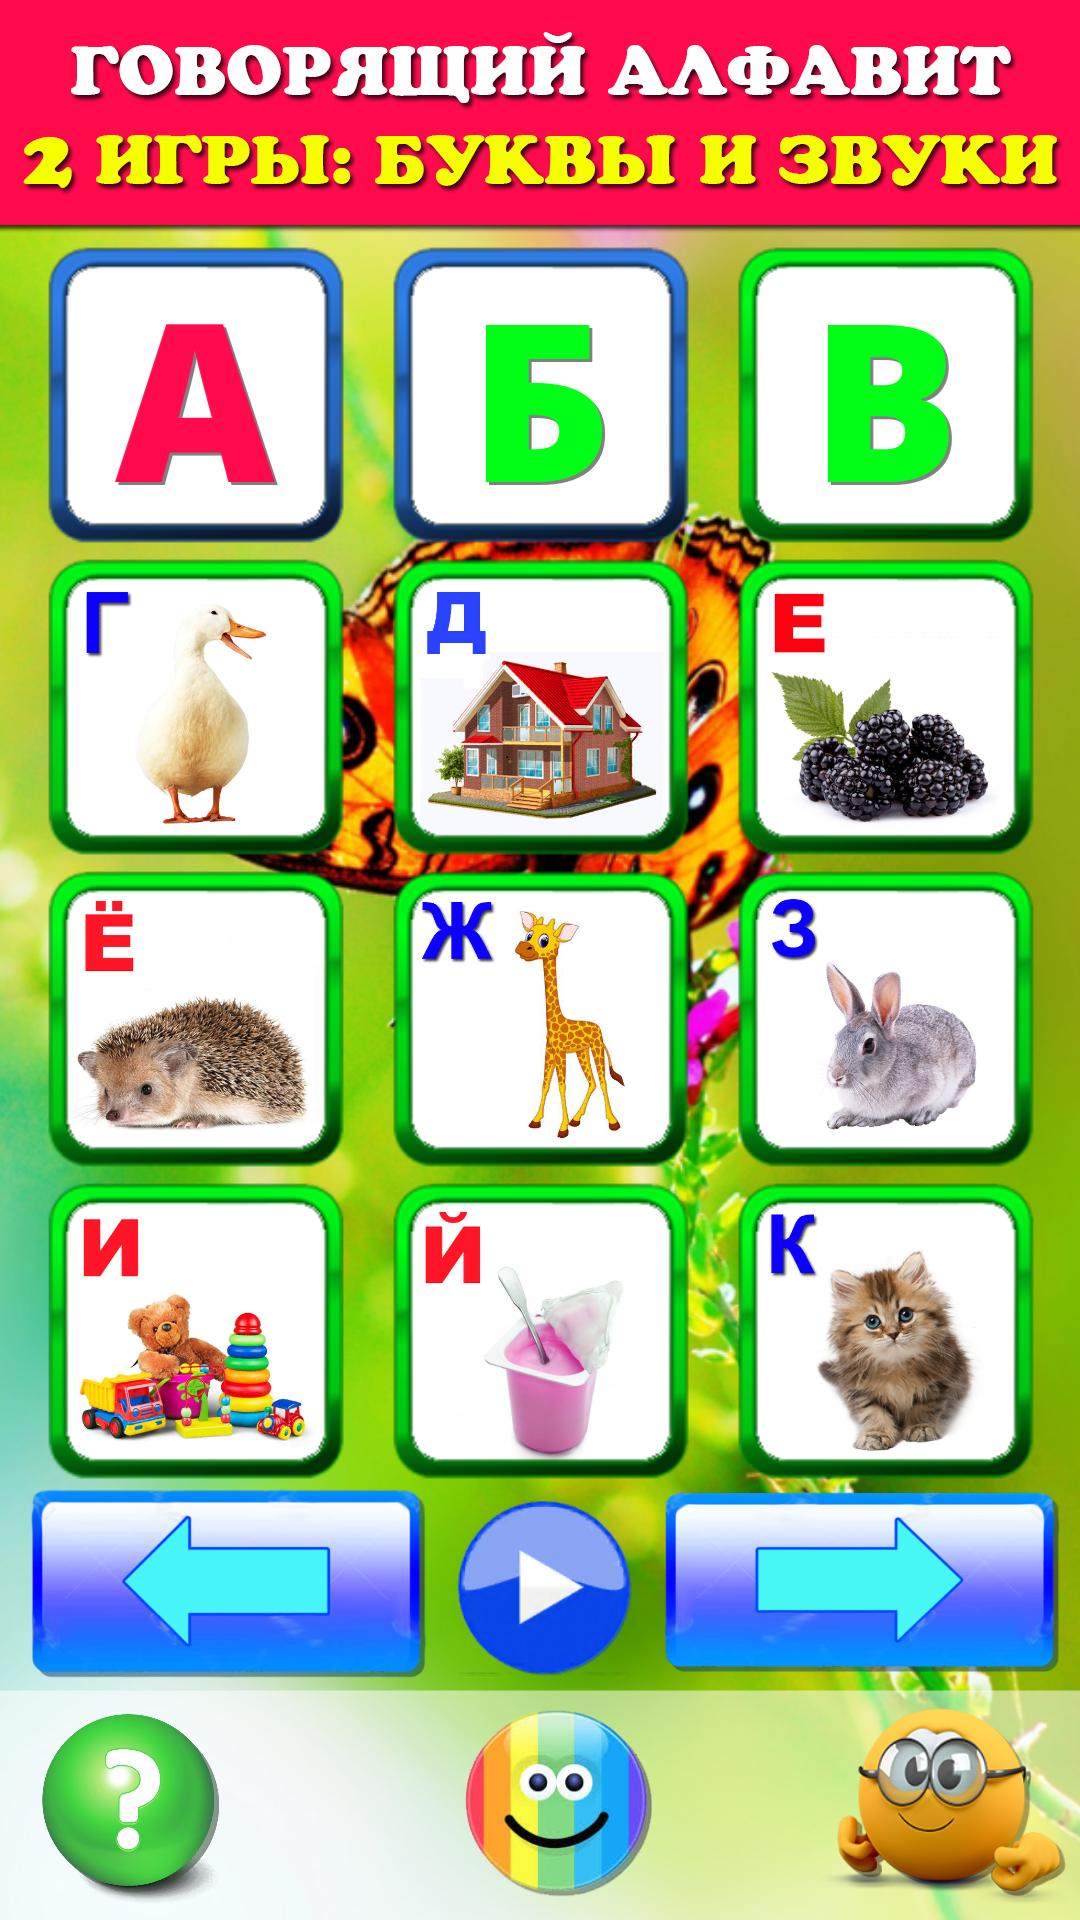 Говорящая азбука алфавит для детей. Учим буквы 2.1 Screenshot 5